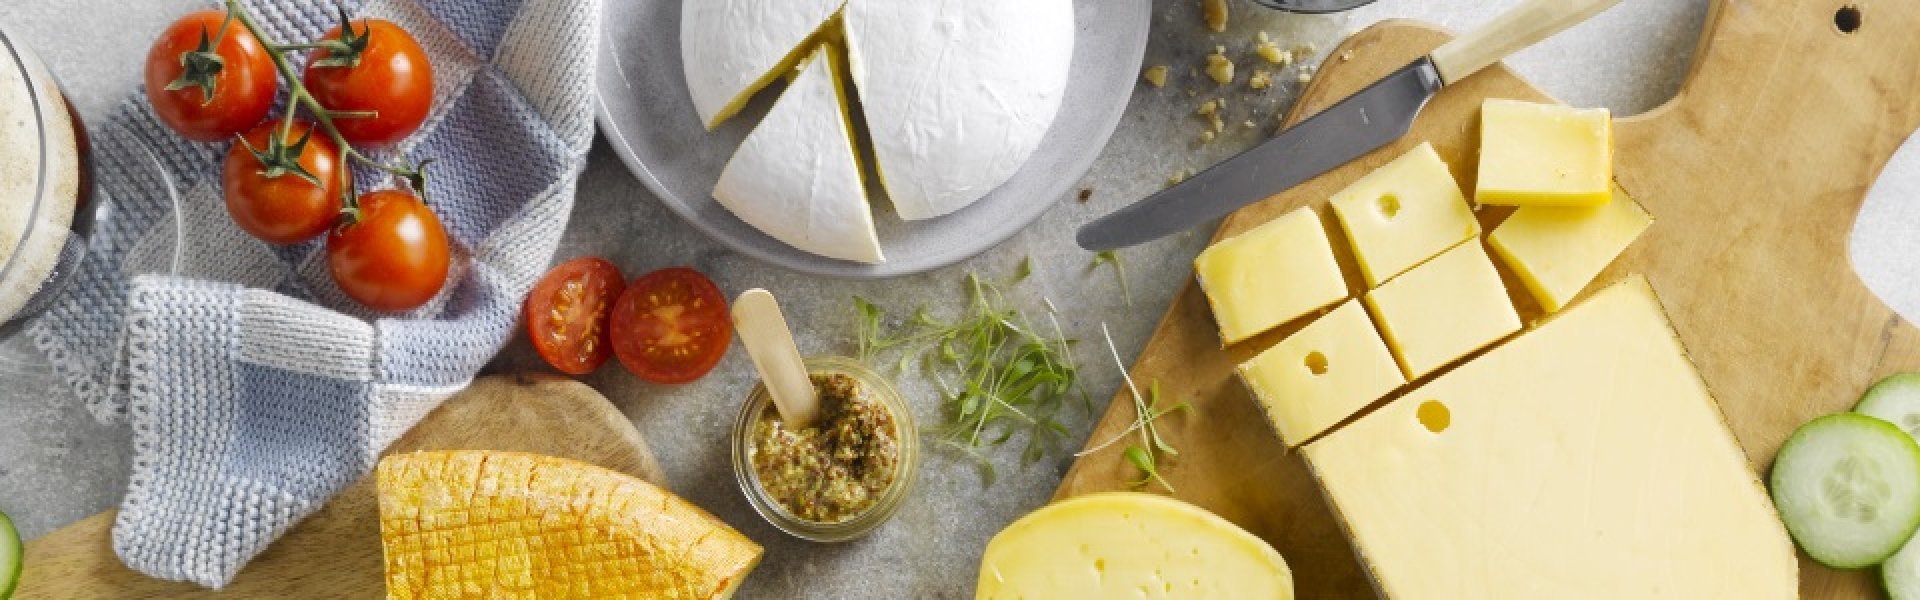 Conseils pour bien préparer votre plateau de fromages - Bernard